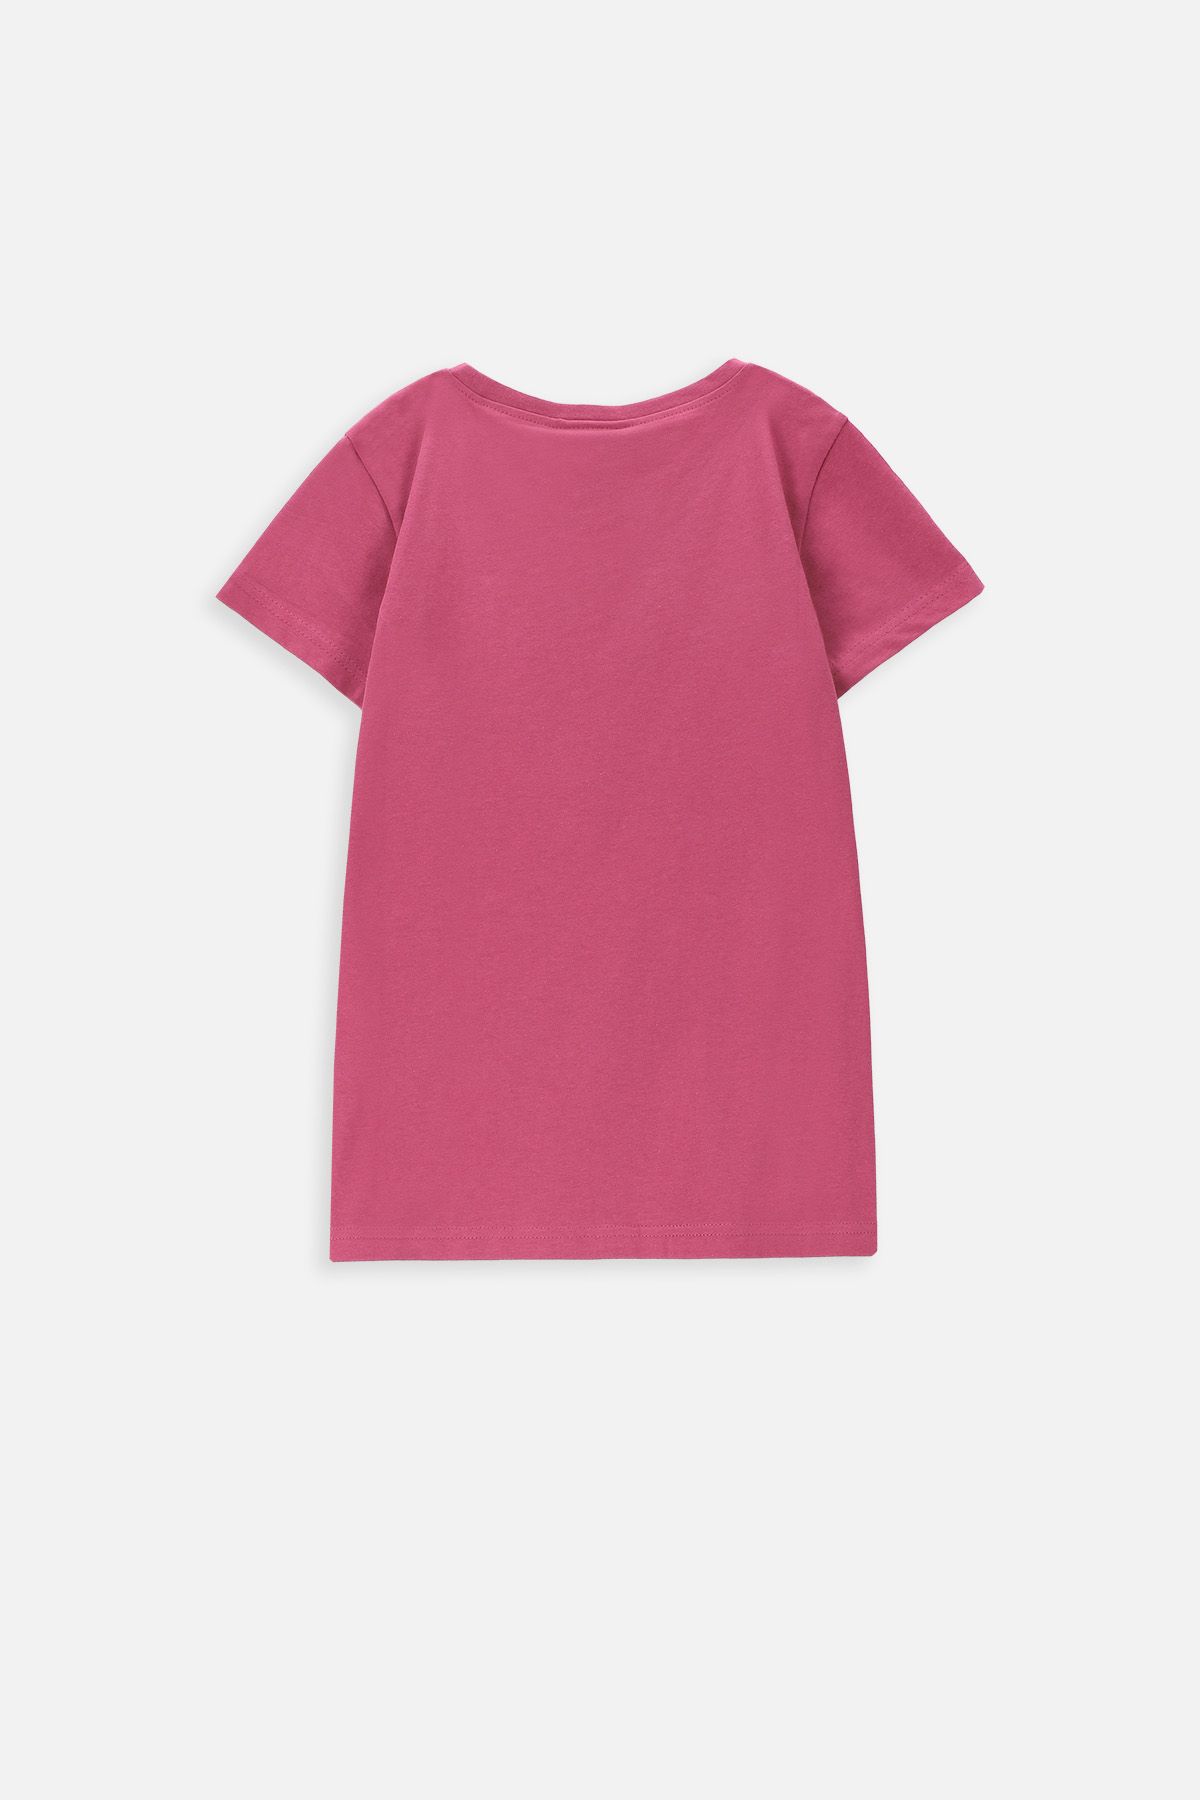 T-shirt z krótkim rękawem różowy z kotem melancholikiem 2228448